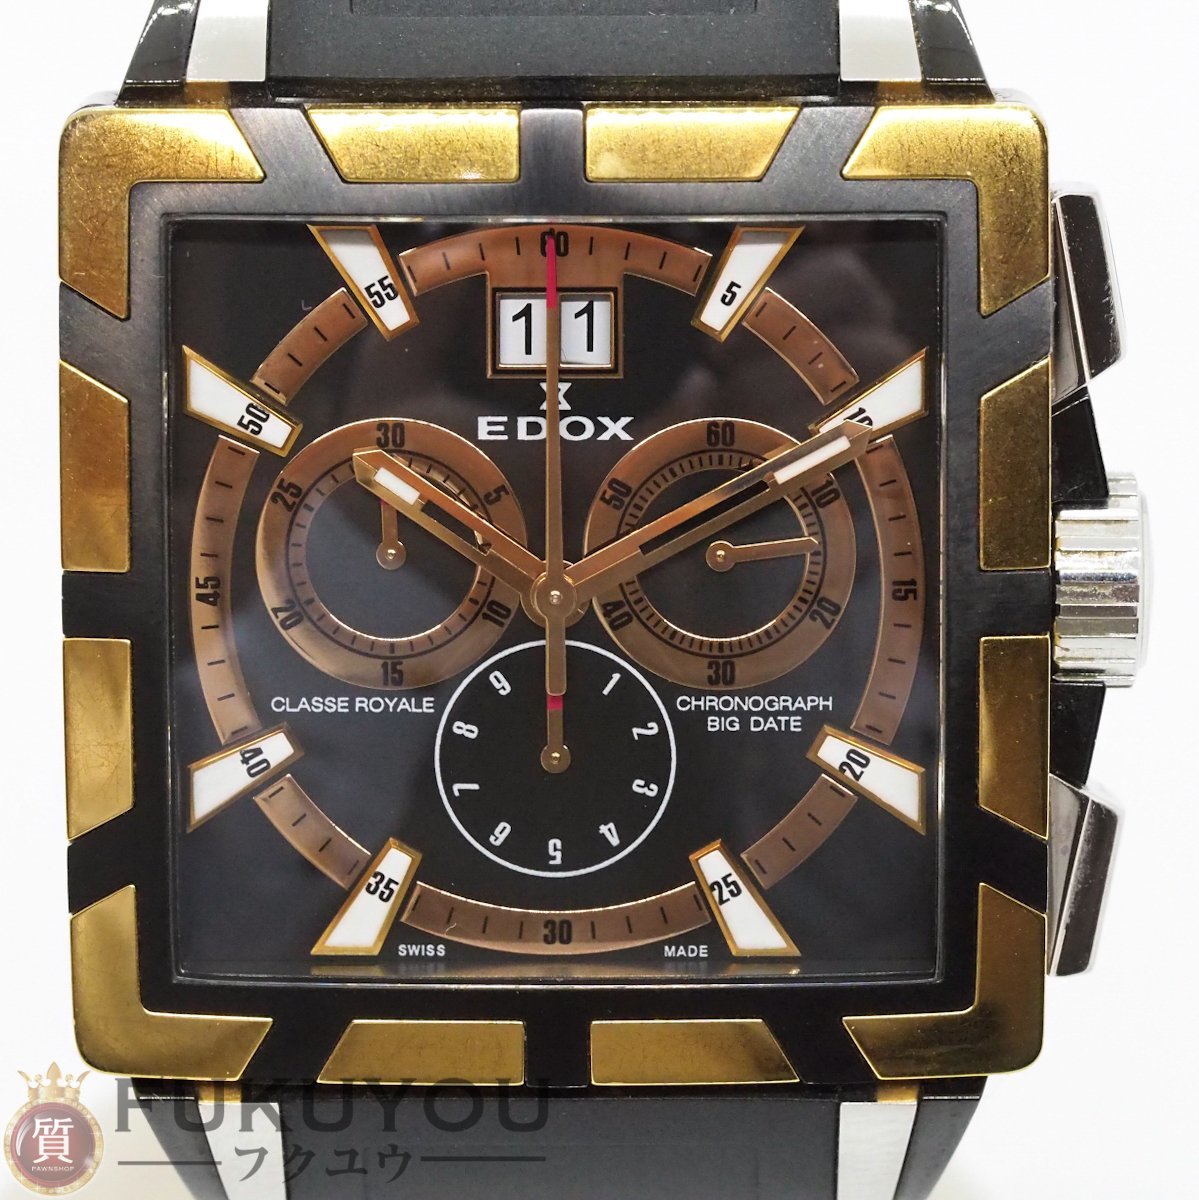 EDOX/エドックス クラスロイヤル クロノグラフ ビッグデイト クォーツ ラバーベルト 10013 腕時計